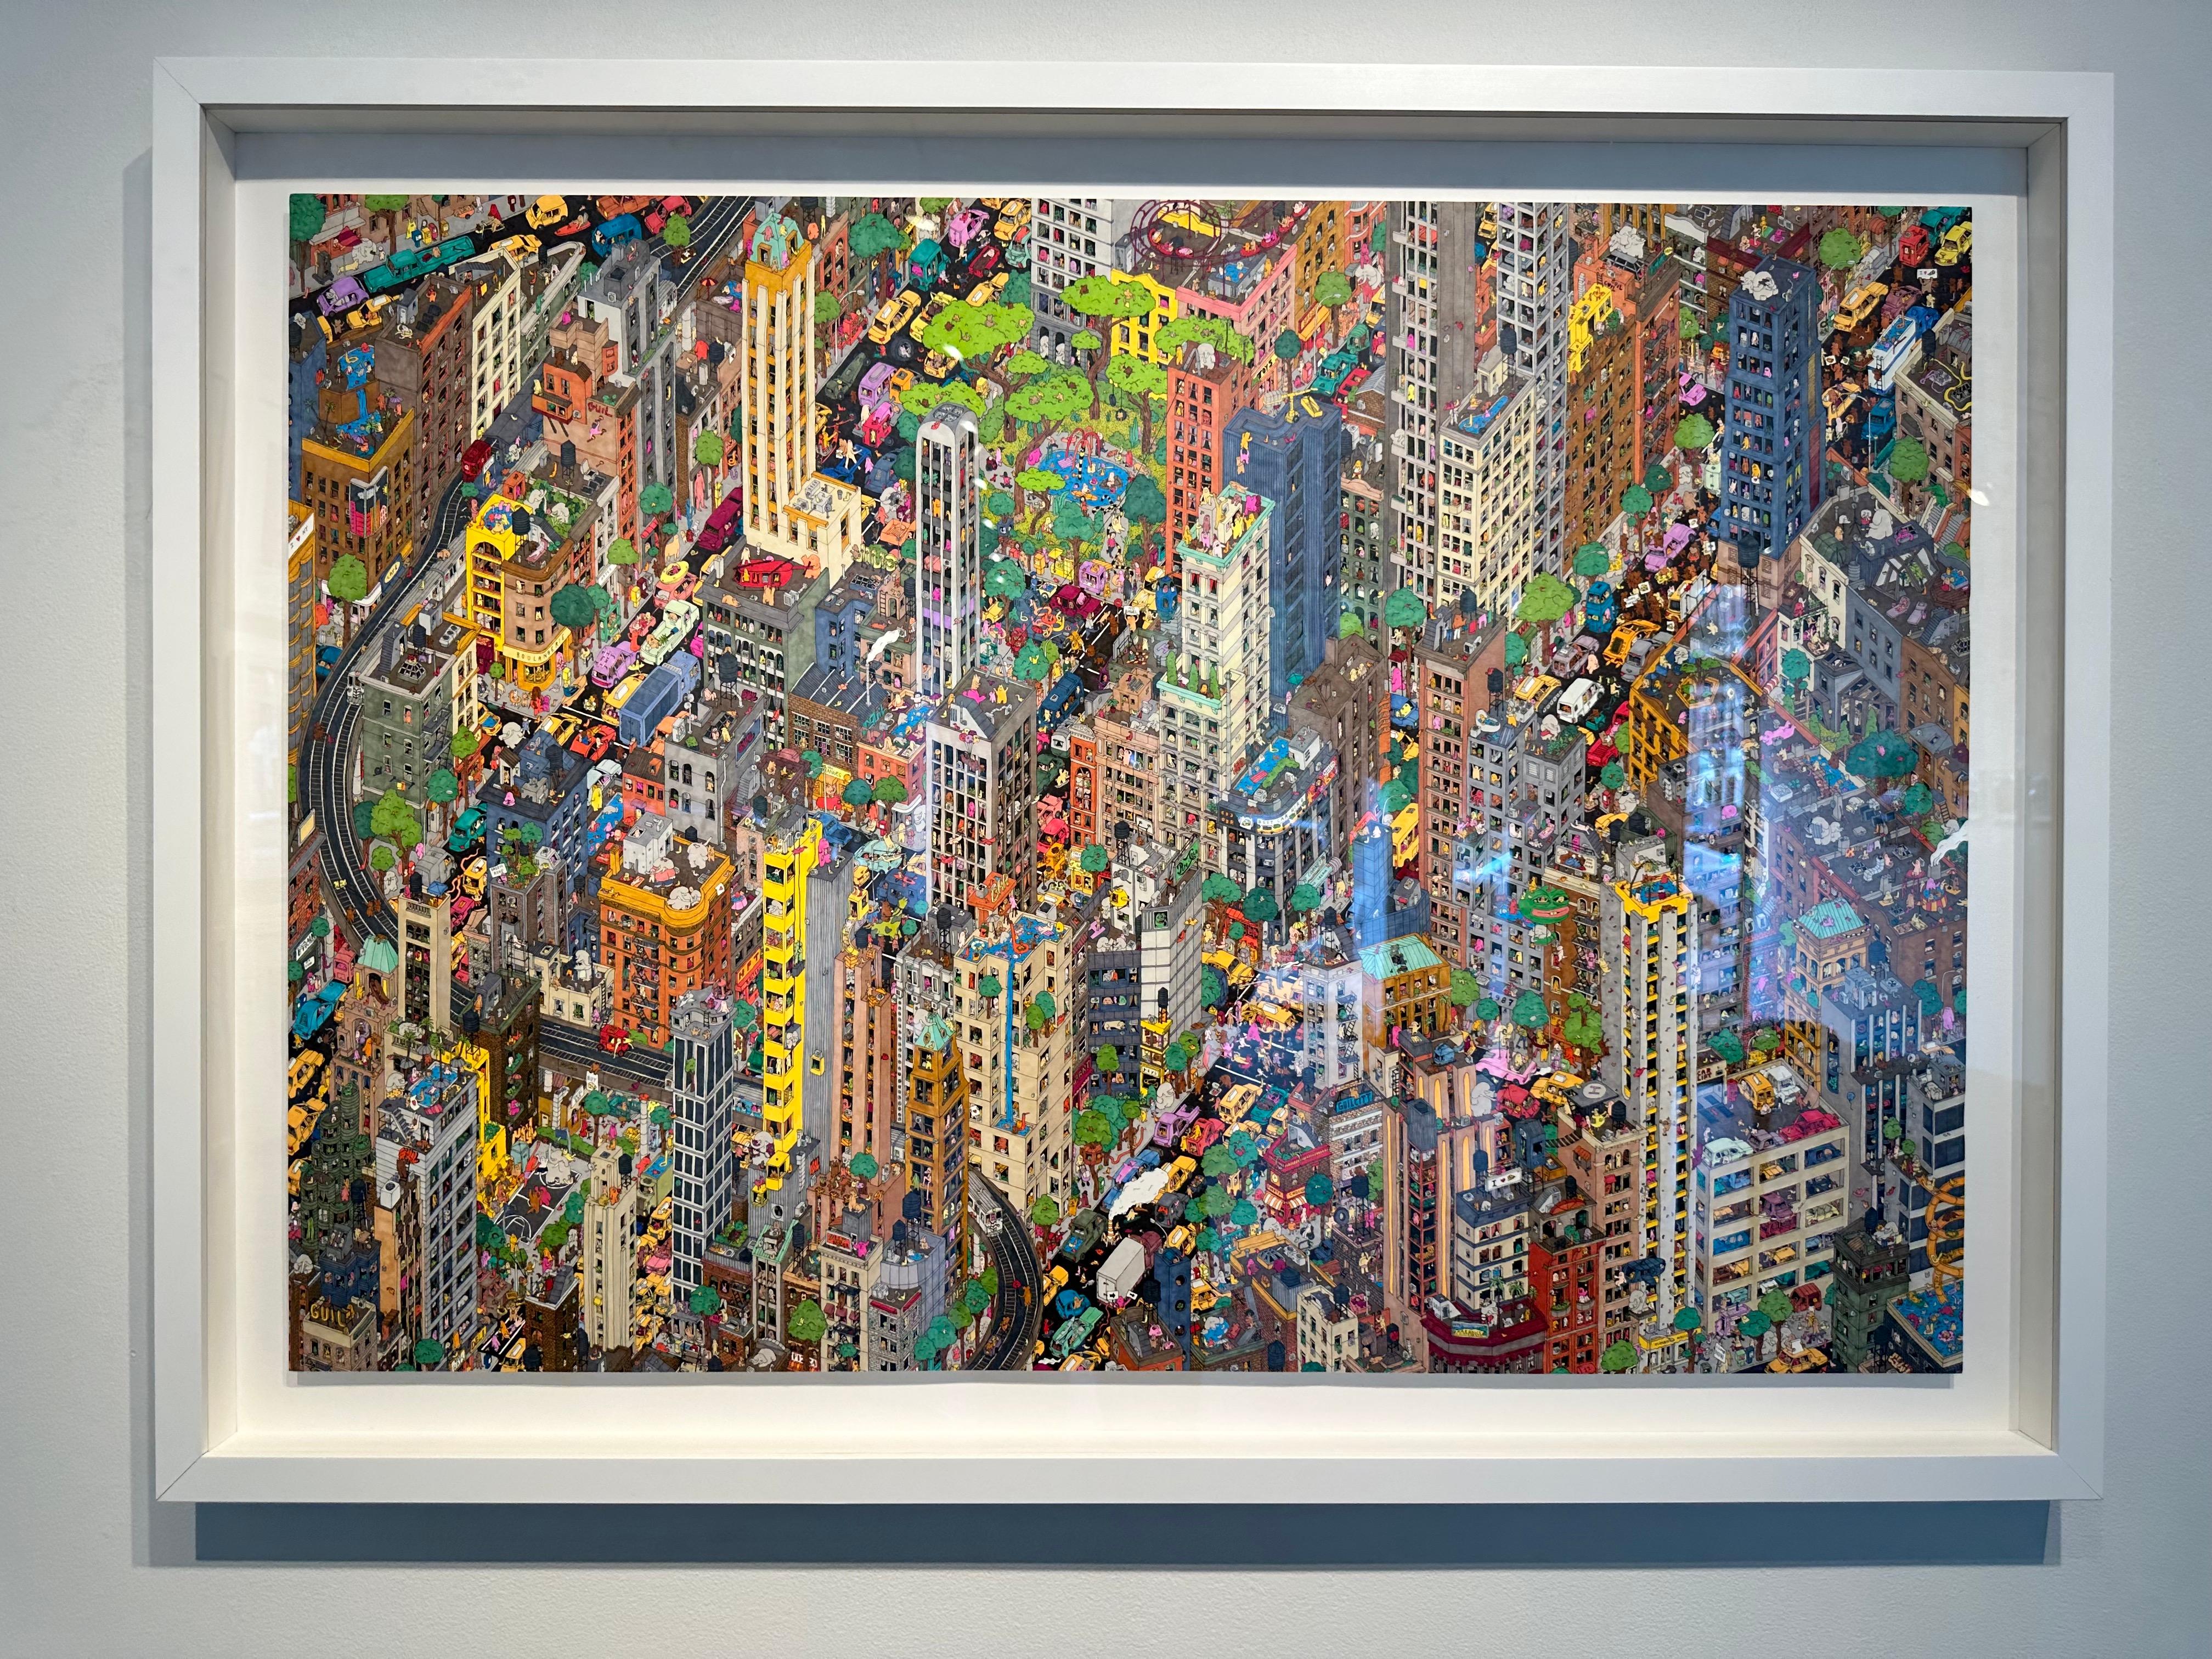 ighborhoods – aufwändige, handgezeichnete, farbenfrohe Illustration des städtischen New York – Art von Guillaume Cornet